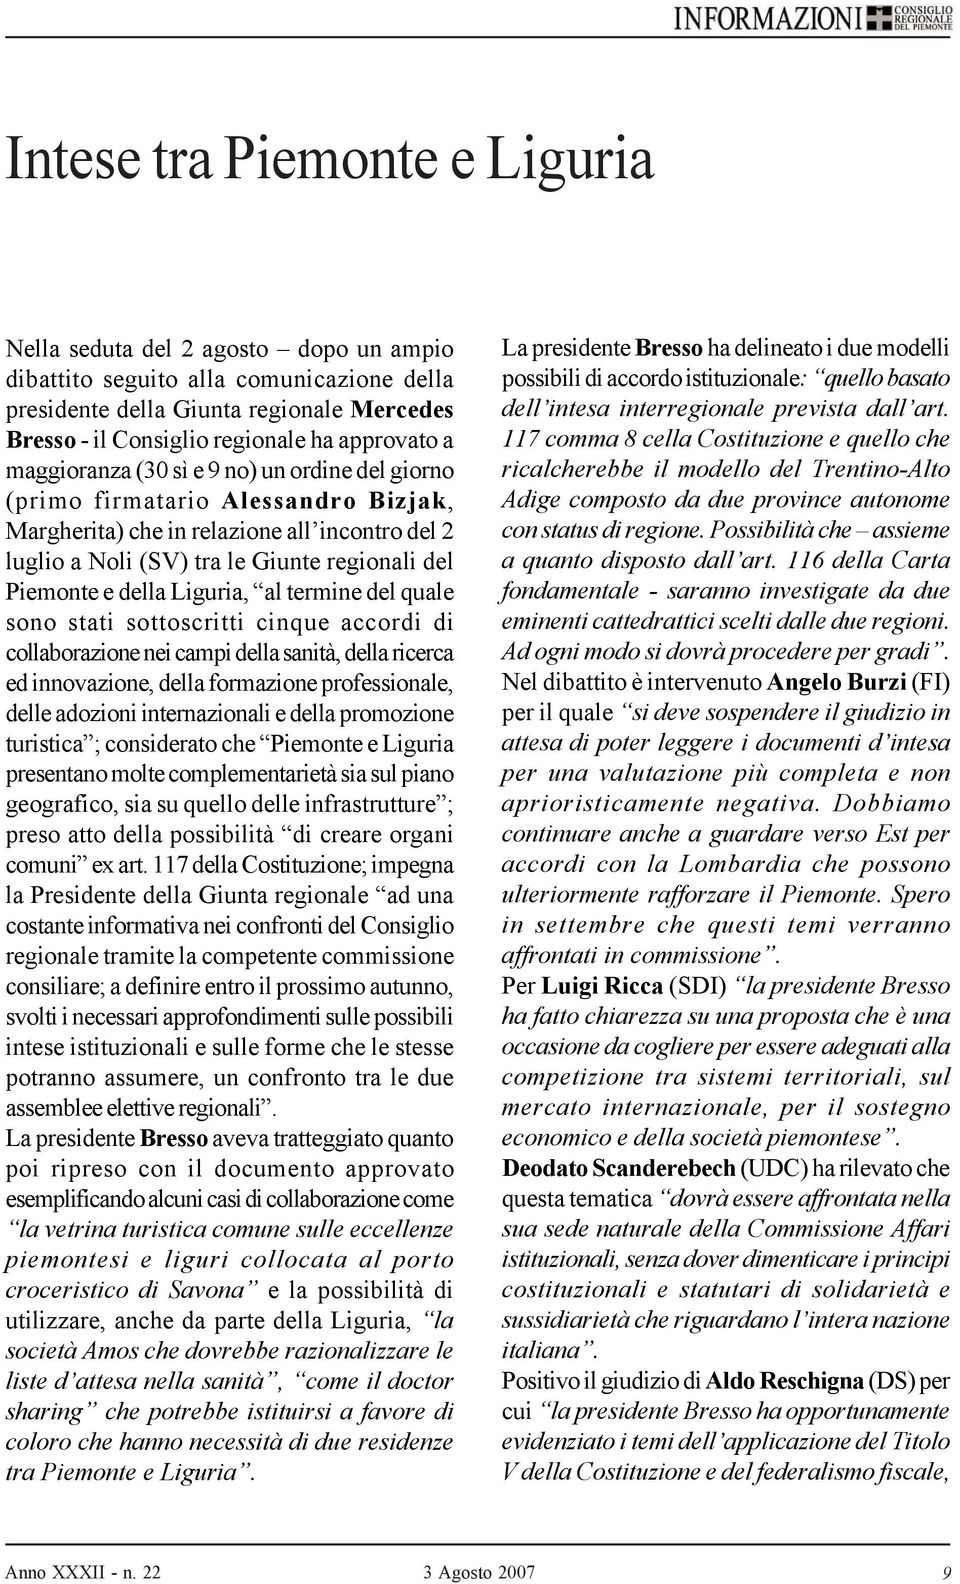 Piemonte e della Liguria, al termine del quale sono stati sottoscritti cinque accordi di collaborazione nei campi della sanità, della ricerca ed innovazione, della formazione professionale, delle